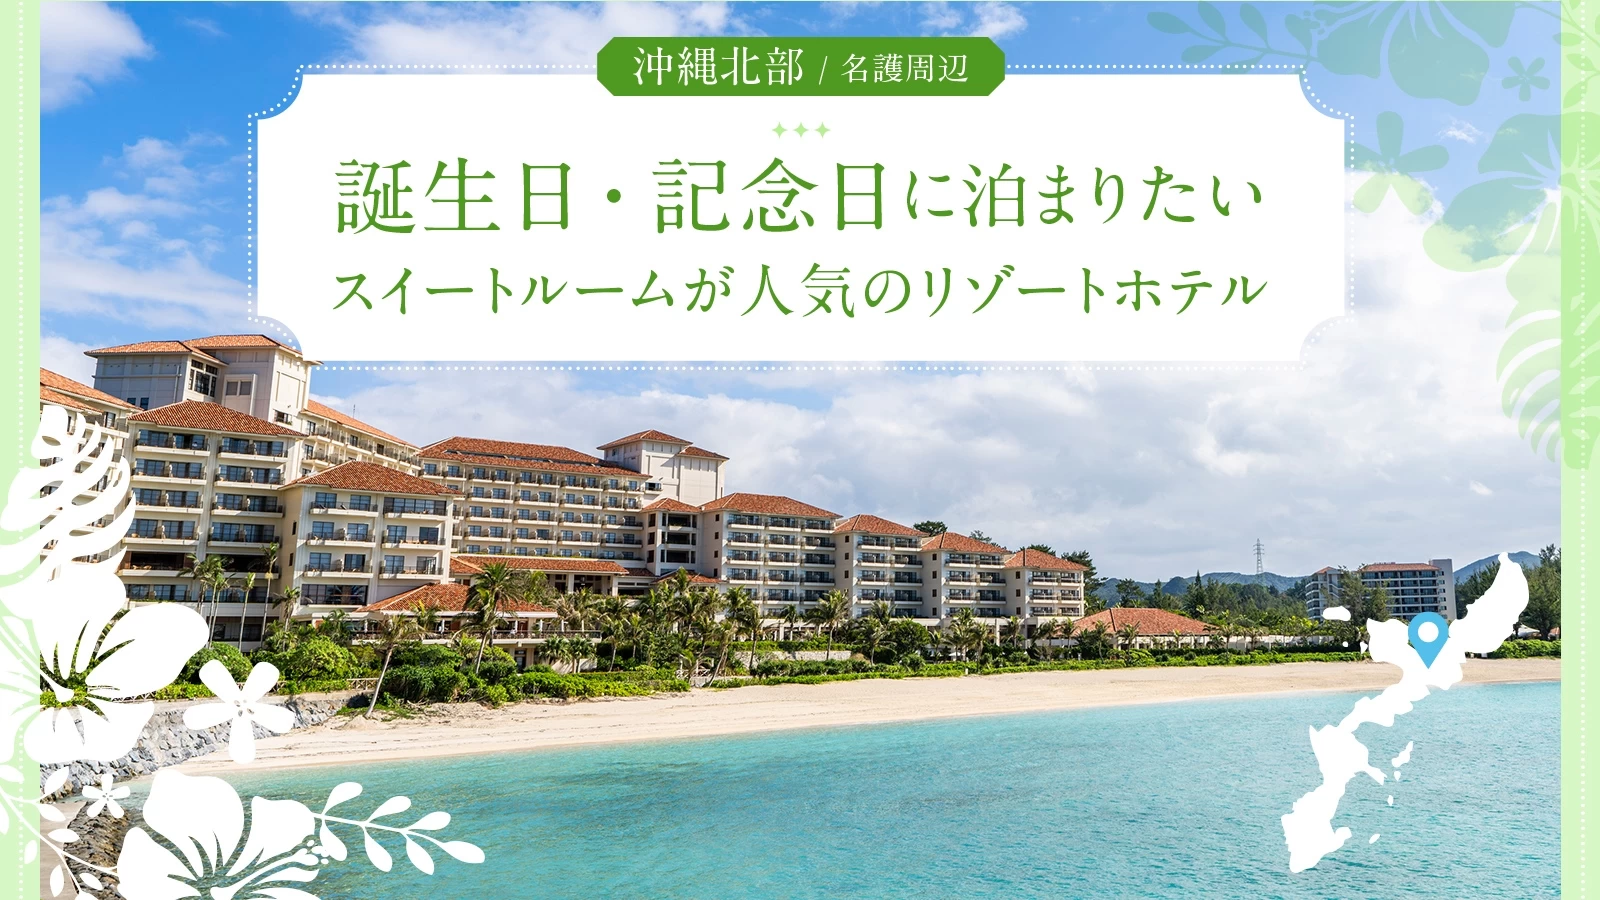 【名護周辺】沖縄北部で誕生日・記念日に泊まりたいスイートルームが人気のリゾートホテル6選